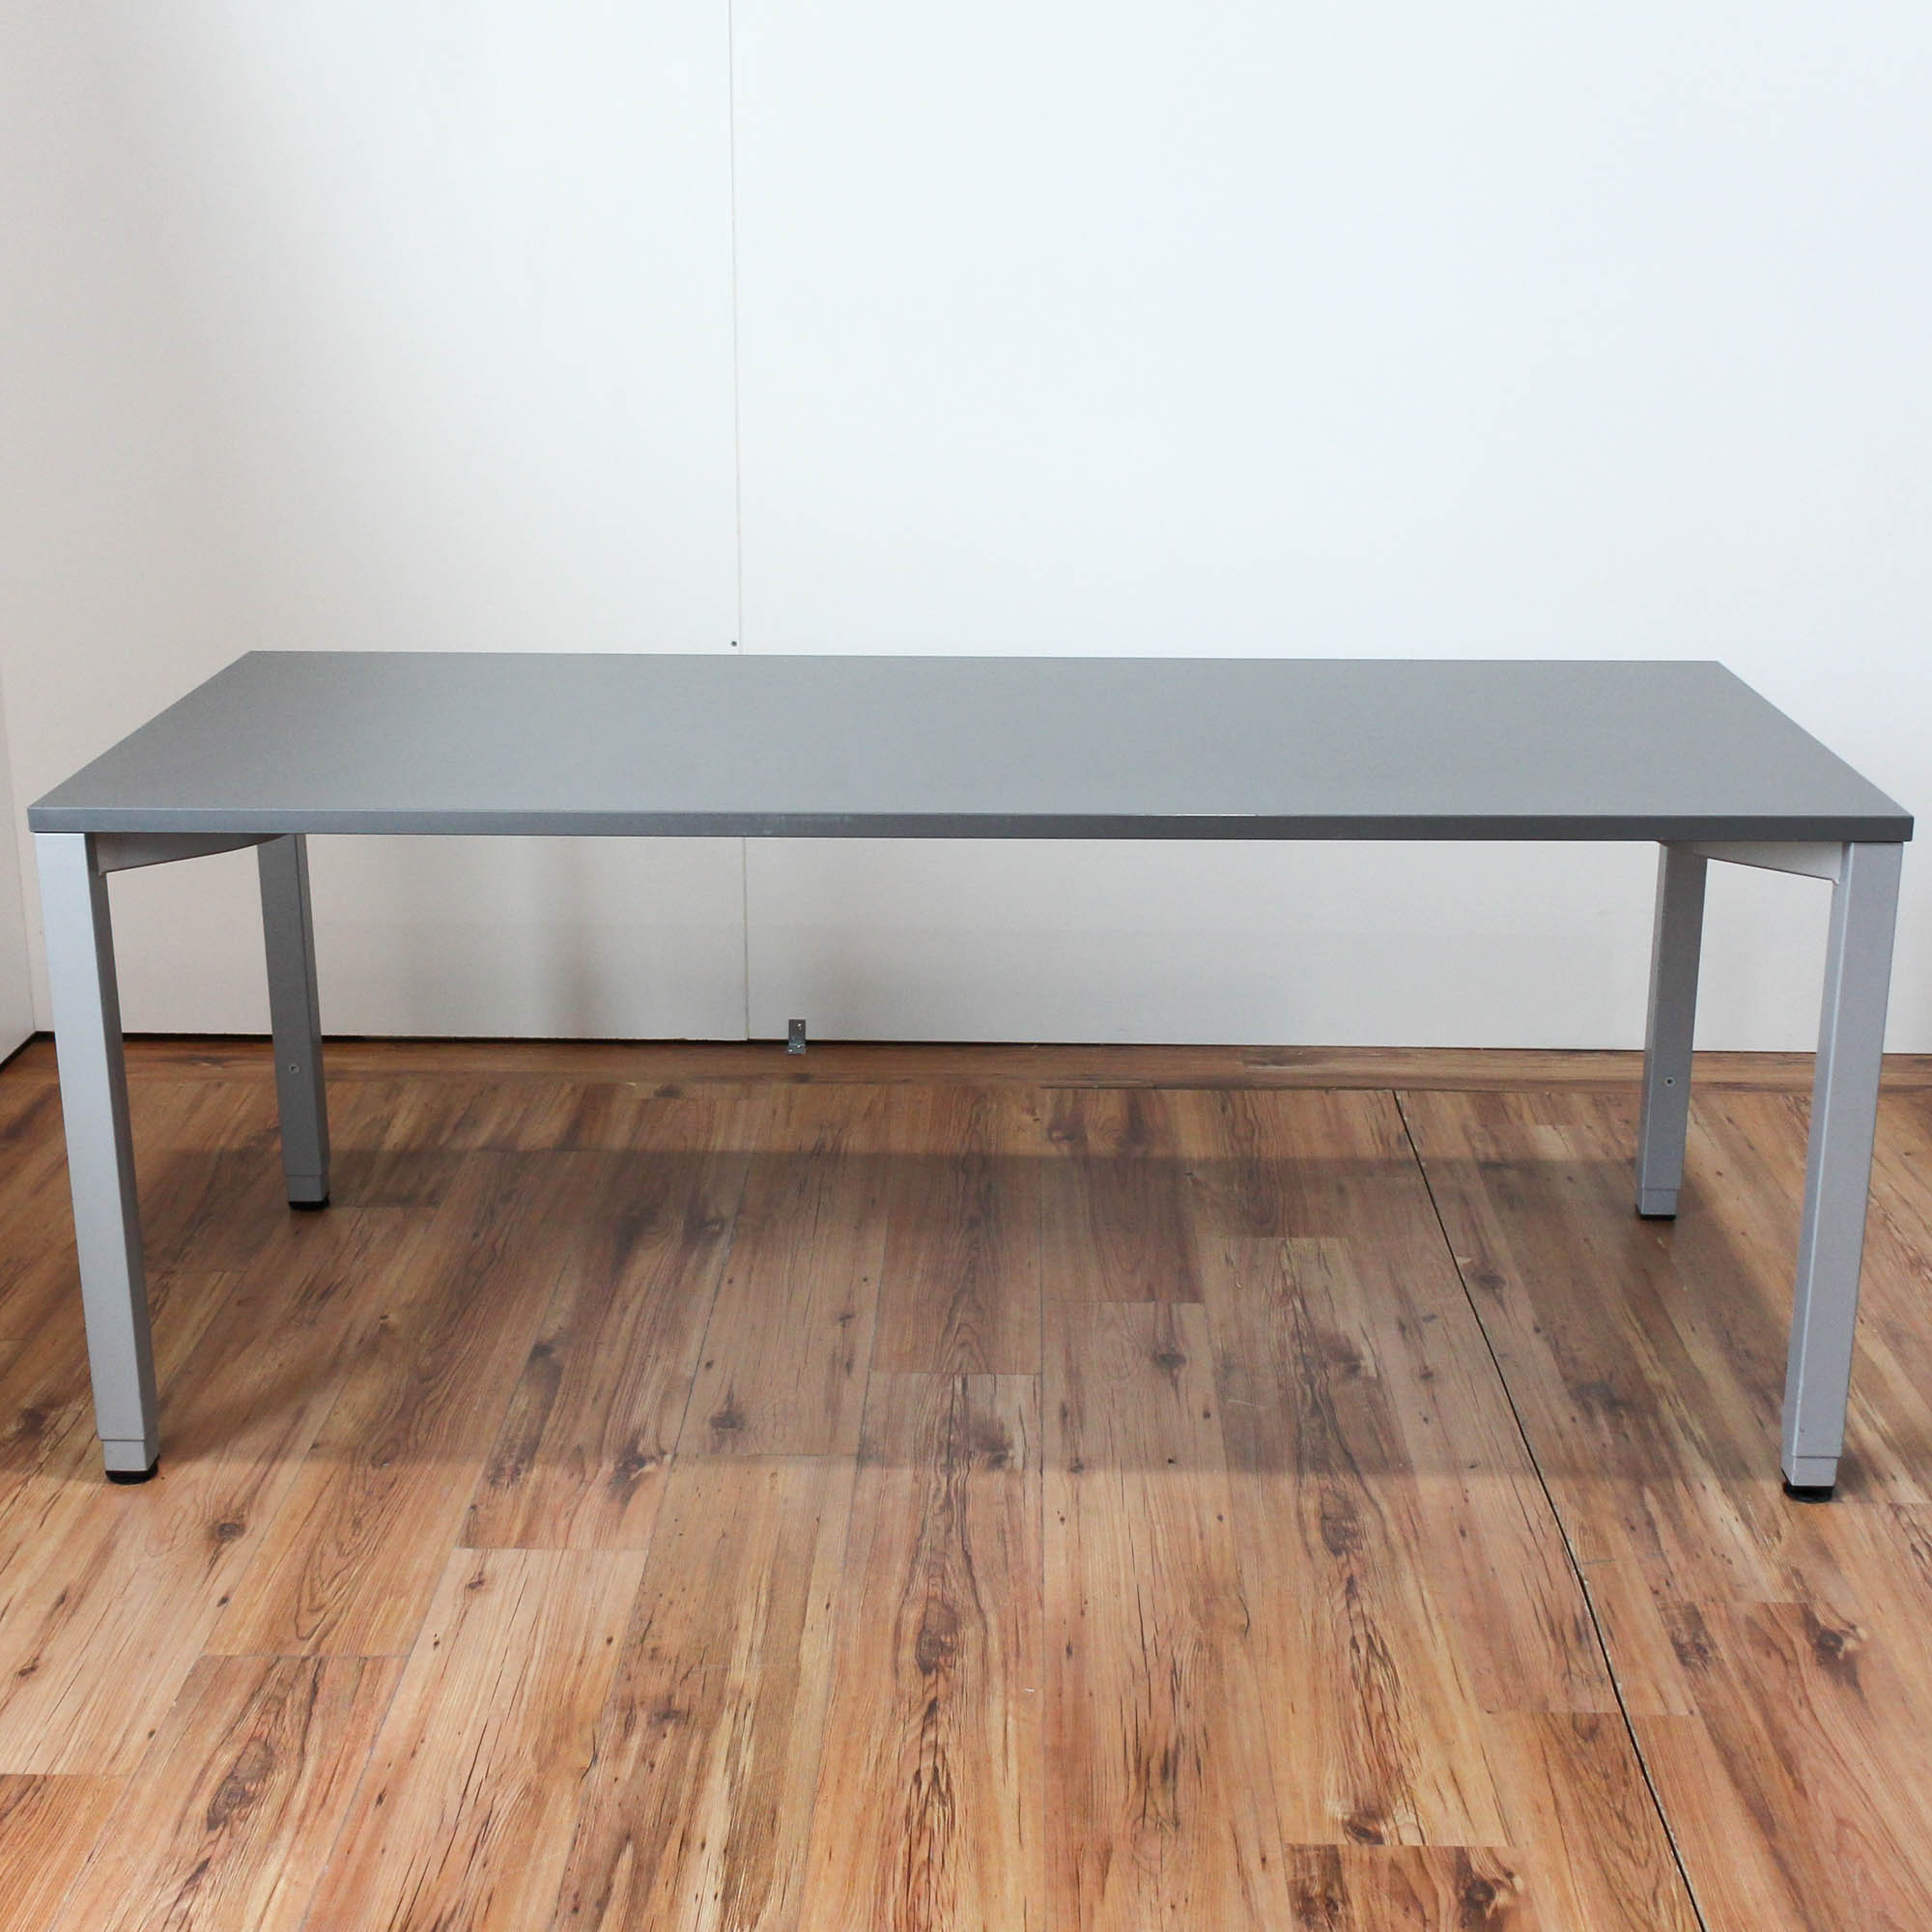 Bene Schreibtisch - 180x80cm in anthrazit - 4-Fußgestell silber